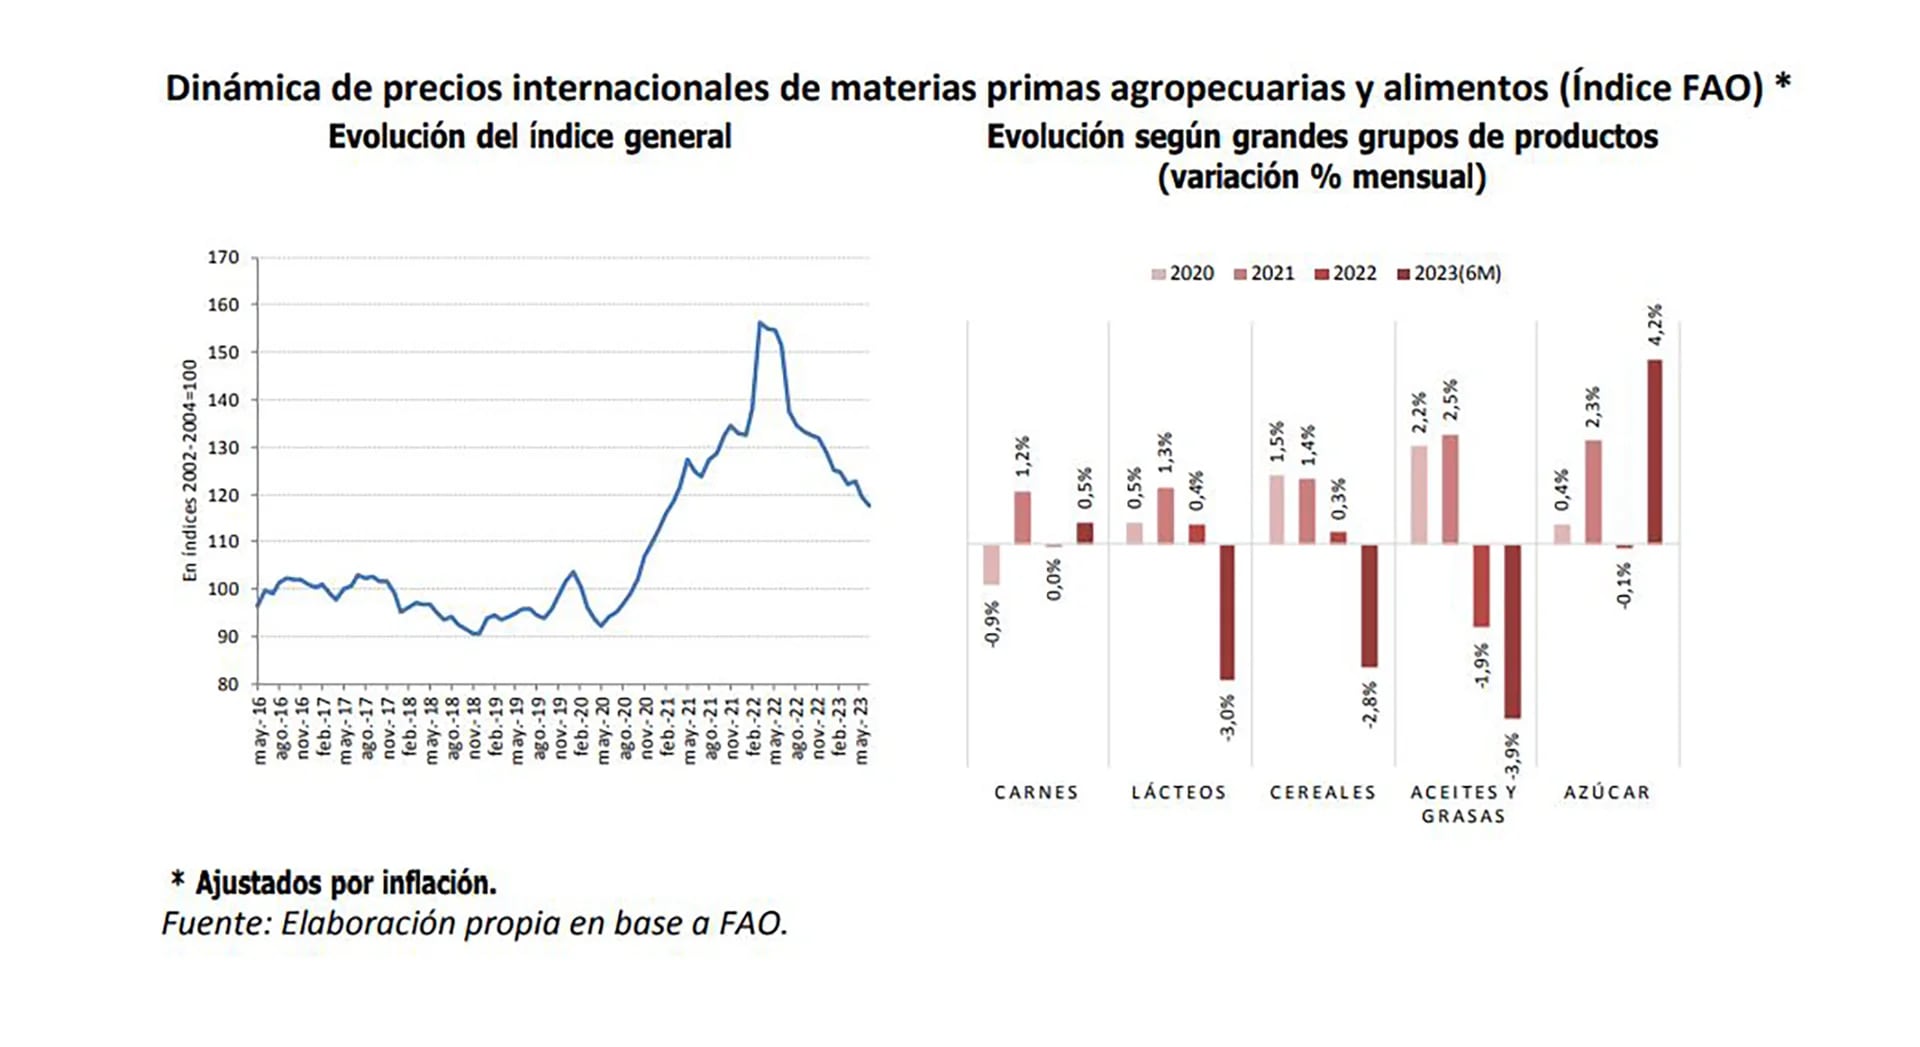 La caída de los precios internacionales de las materias primeras agropecuarias fue otro factor a favor del retraso relativo del precio de la carne vacuna